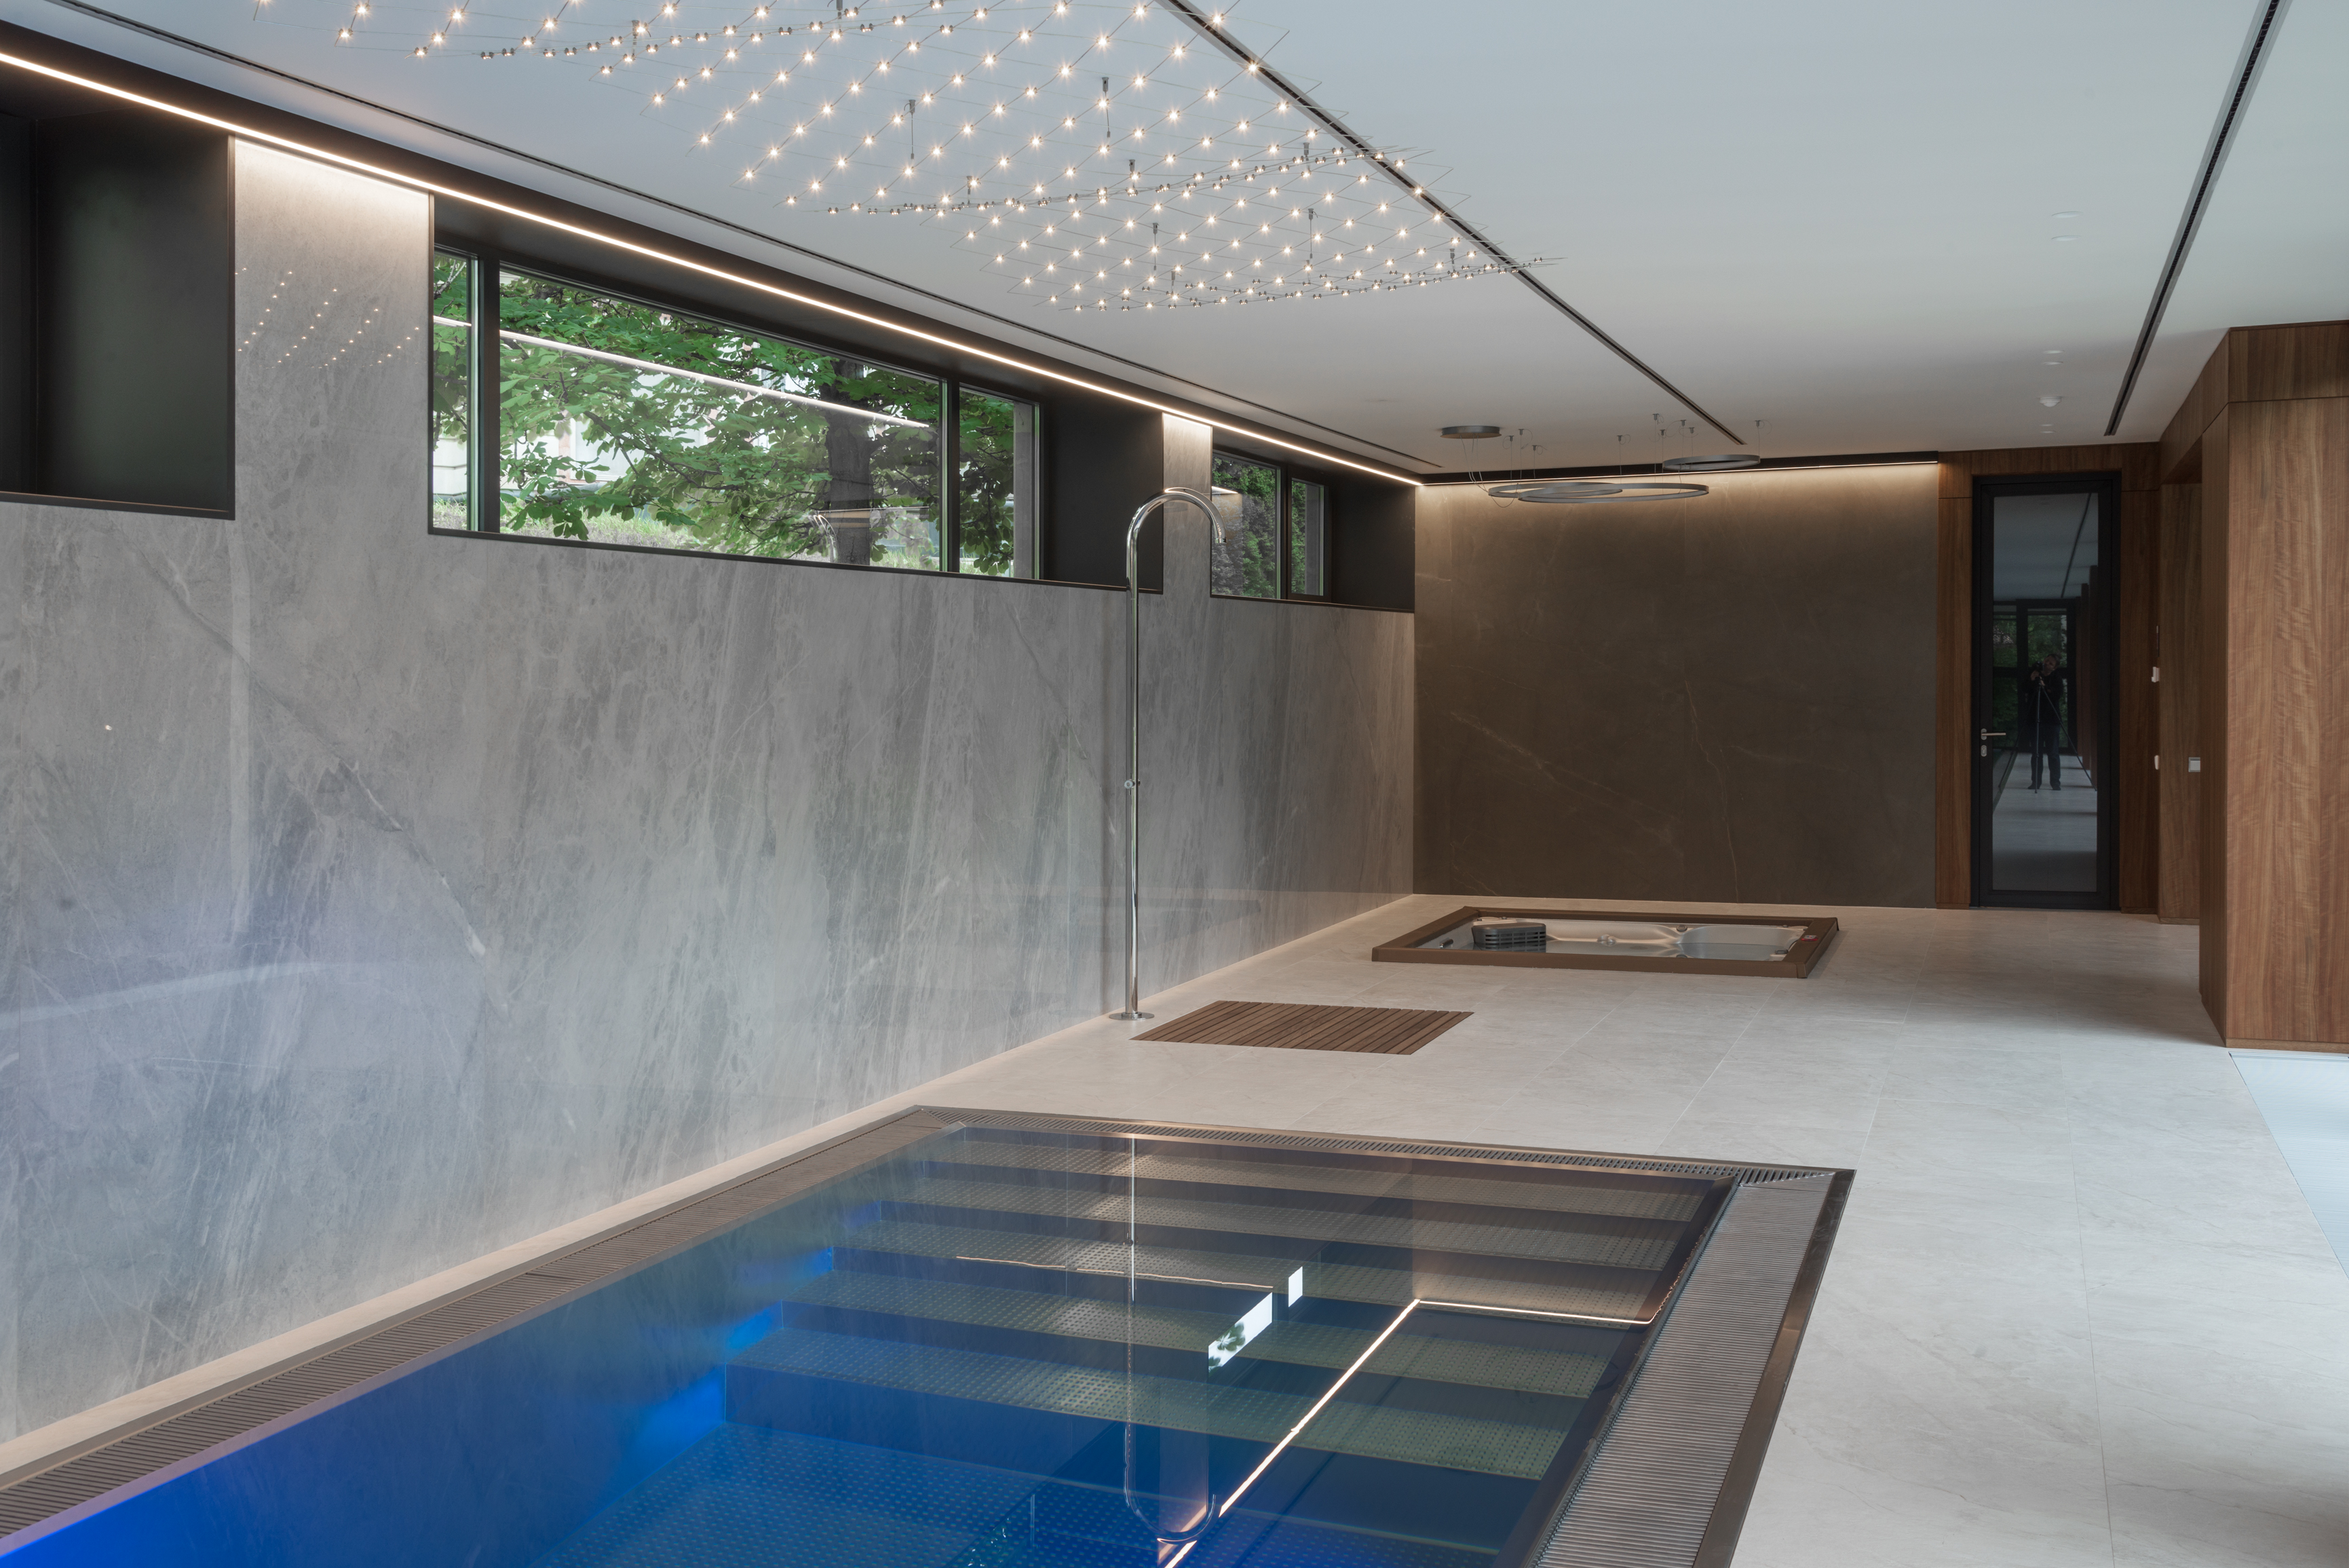 Vnitřní designové privátní wellness s bazénem IMAGINOX v úrovni terasy